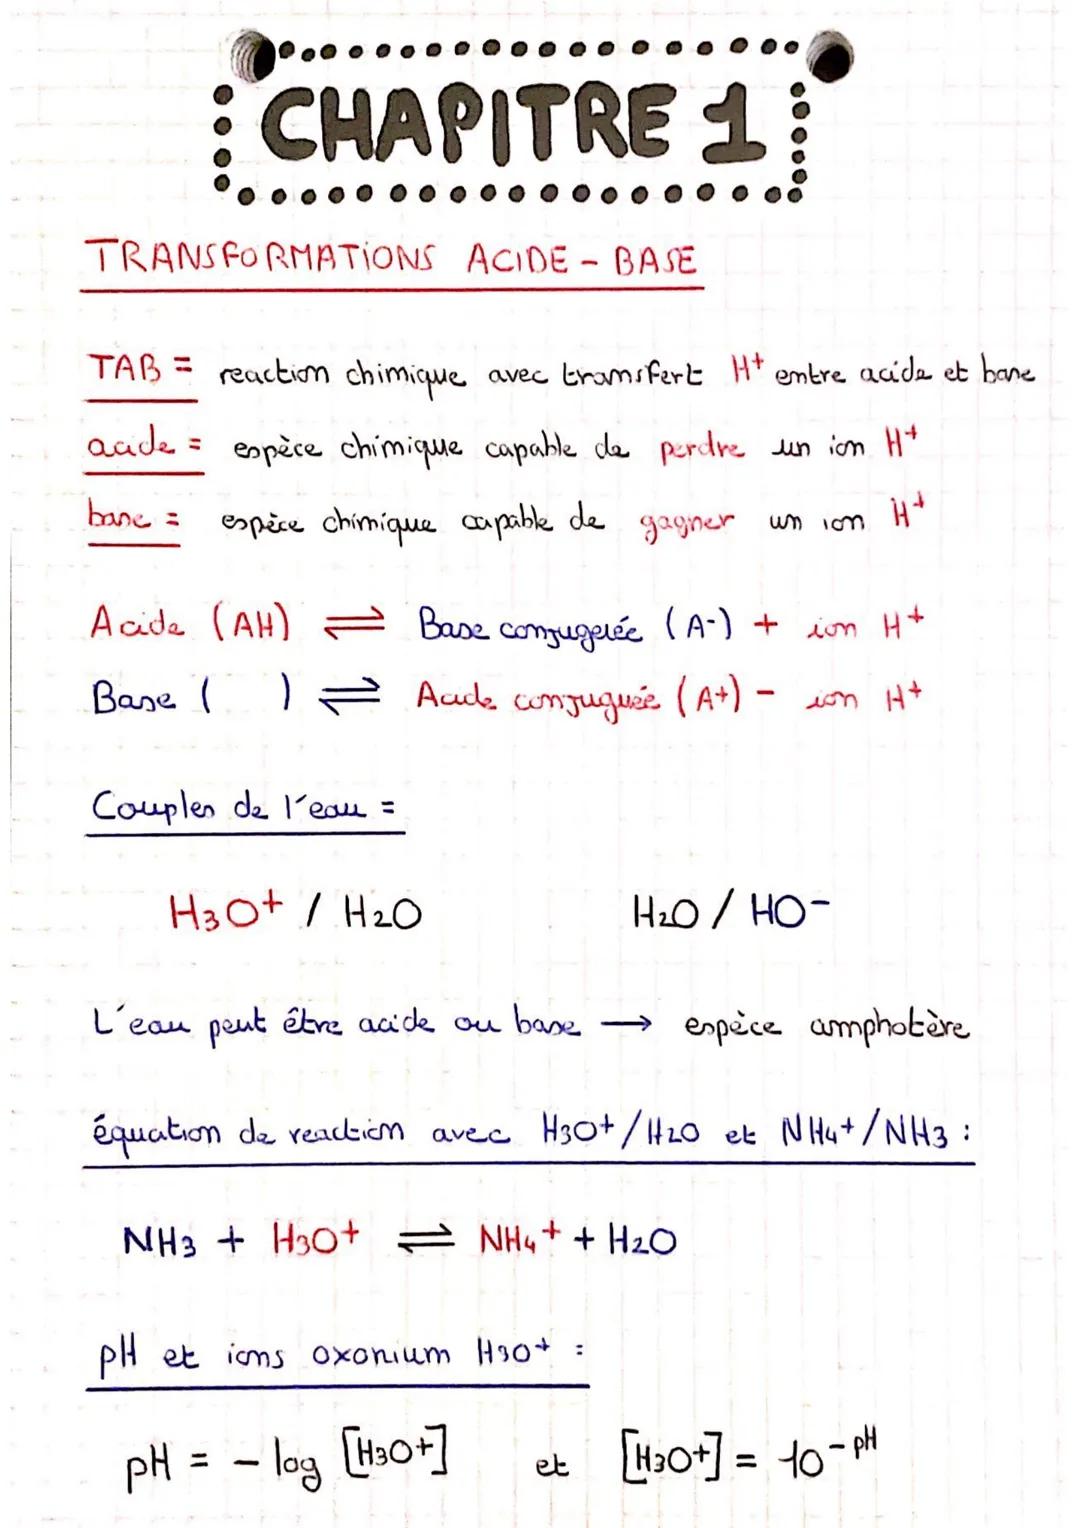 CHAPITRE 1:
TRANSFORMATIONS ACIDE - BASE
TAB = reaction chimique
aade = espèce chimique capable de perdre un ion H+
espèce chimique capable 